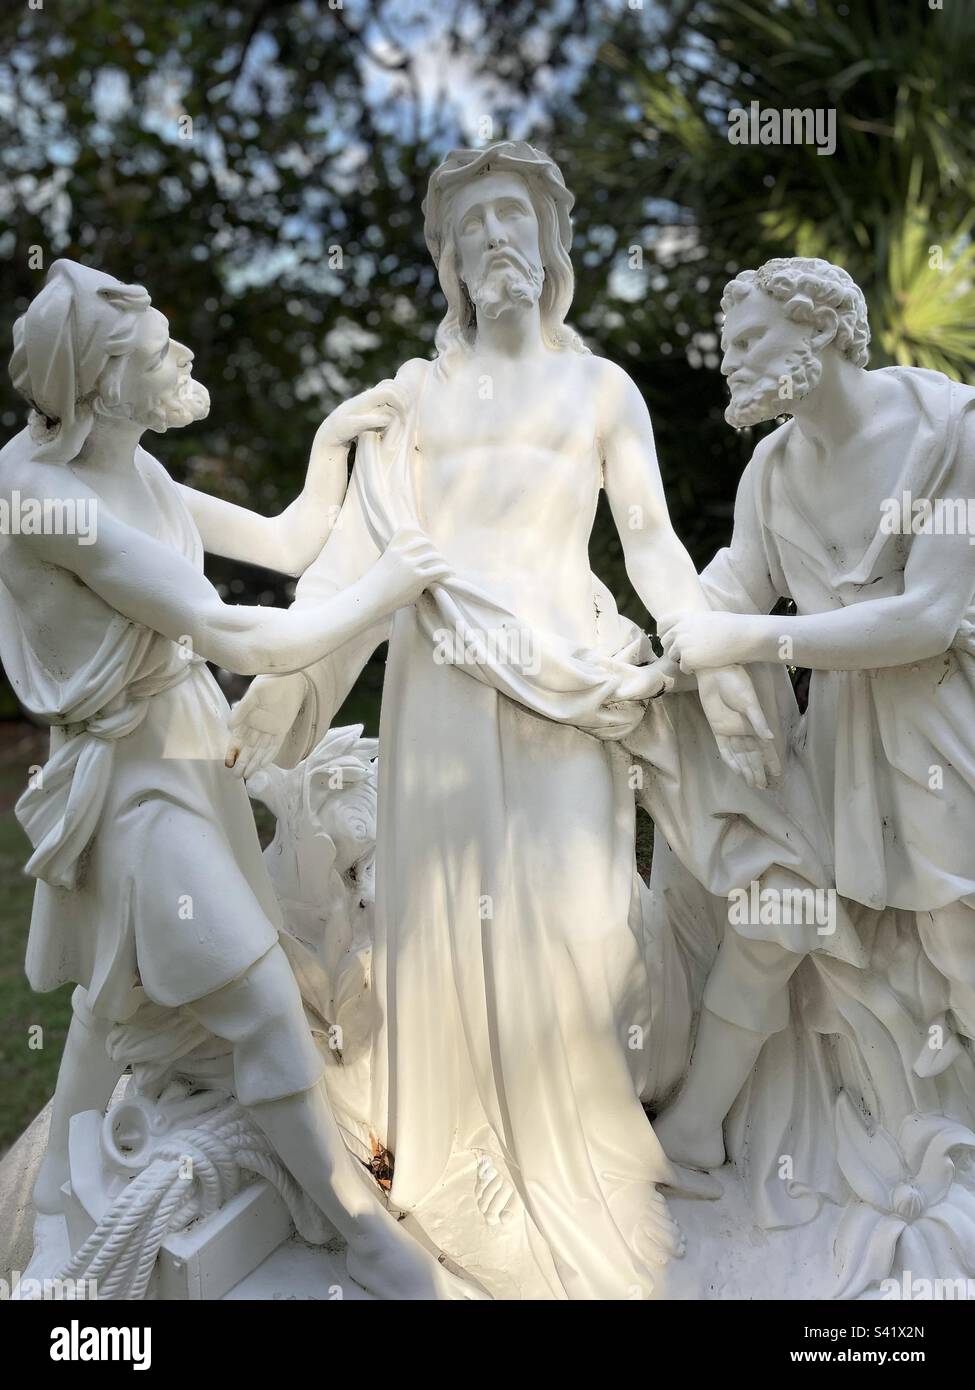 Jésus dépouillé de ses vêtements, des stations de la croix, des statues blanches presque grandeur nature, 10th station, mode portrait Banque D'Images